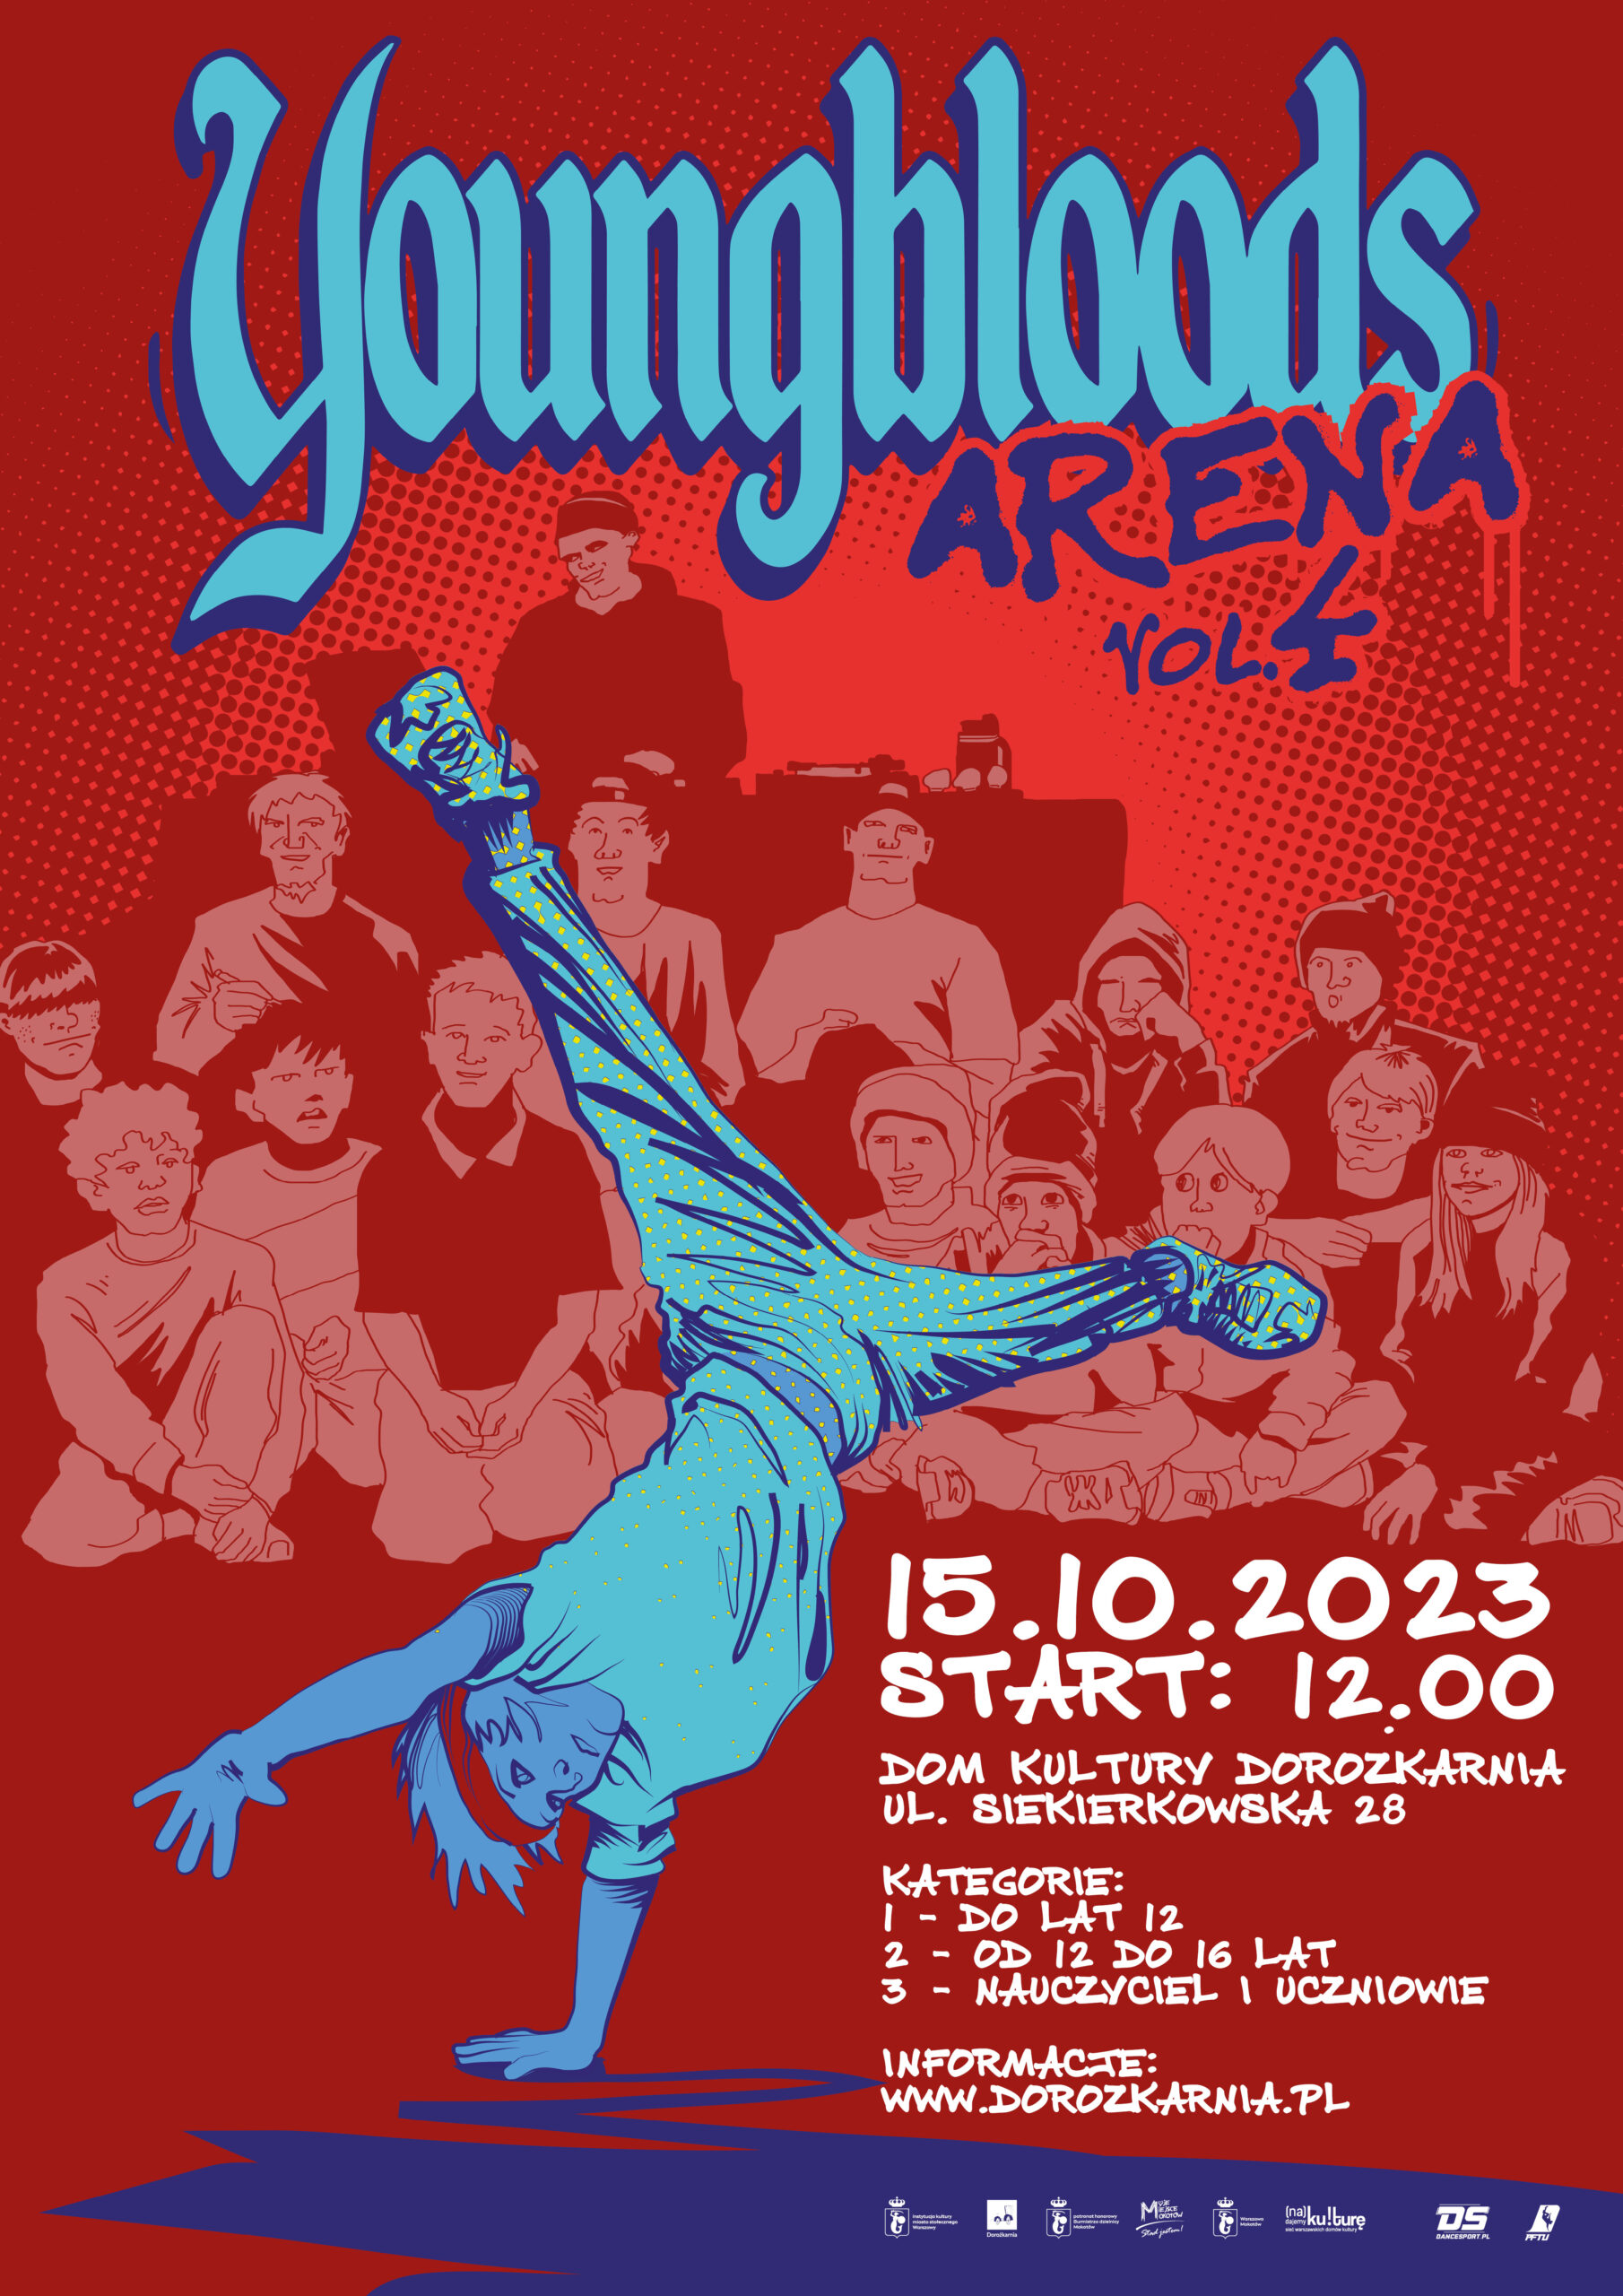 Plakat wydarzenia Youngbloods Arena - zawodów w stylu breakdance, narysowana postać chłopaka tańczącego breakdance, za nim publiczność, w dolnym pasku logotypy